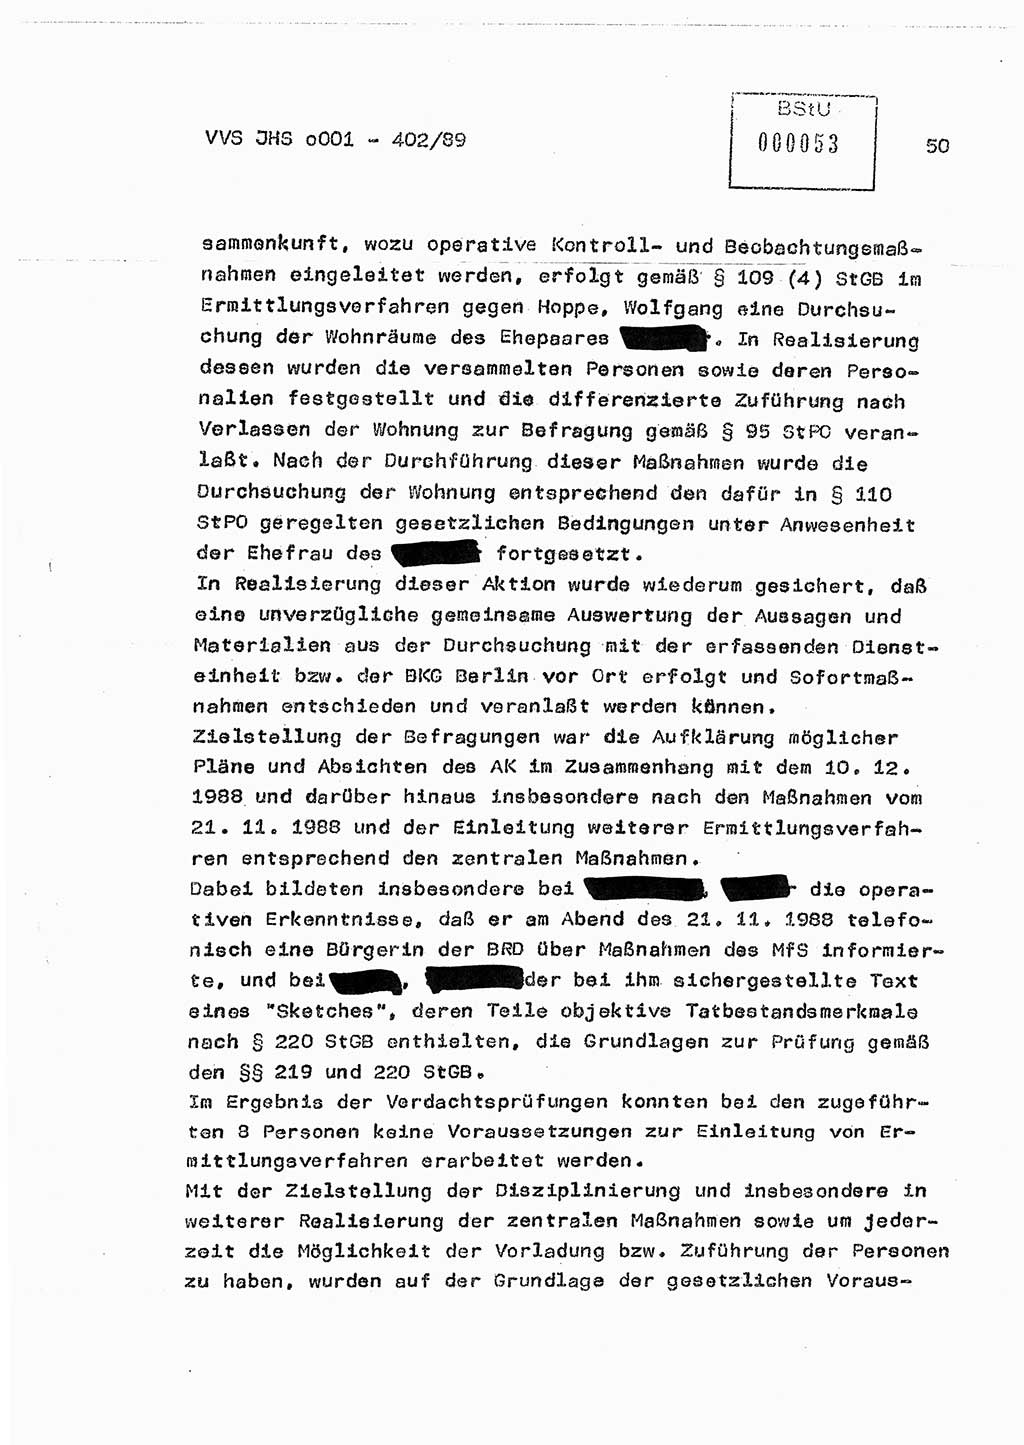 Diplomarbeit Major Günter Müller (HA Ⅸ/9), Ministerium für Staatssicherheit (MfS) [Deutsche Demokratische Republik (DDR)], Juristische Hochschule (JHS), Vertrauliche Verschlußsache (VVS) o001-402/89, Potsdam 1989, Seite 50 (Dipl.-Arb. MfS DDR JHS VVS o001-402/89 1989, S. 50)